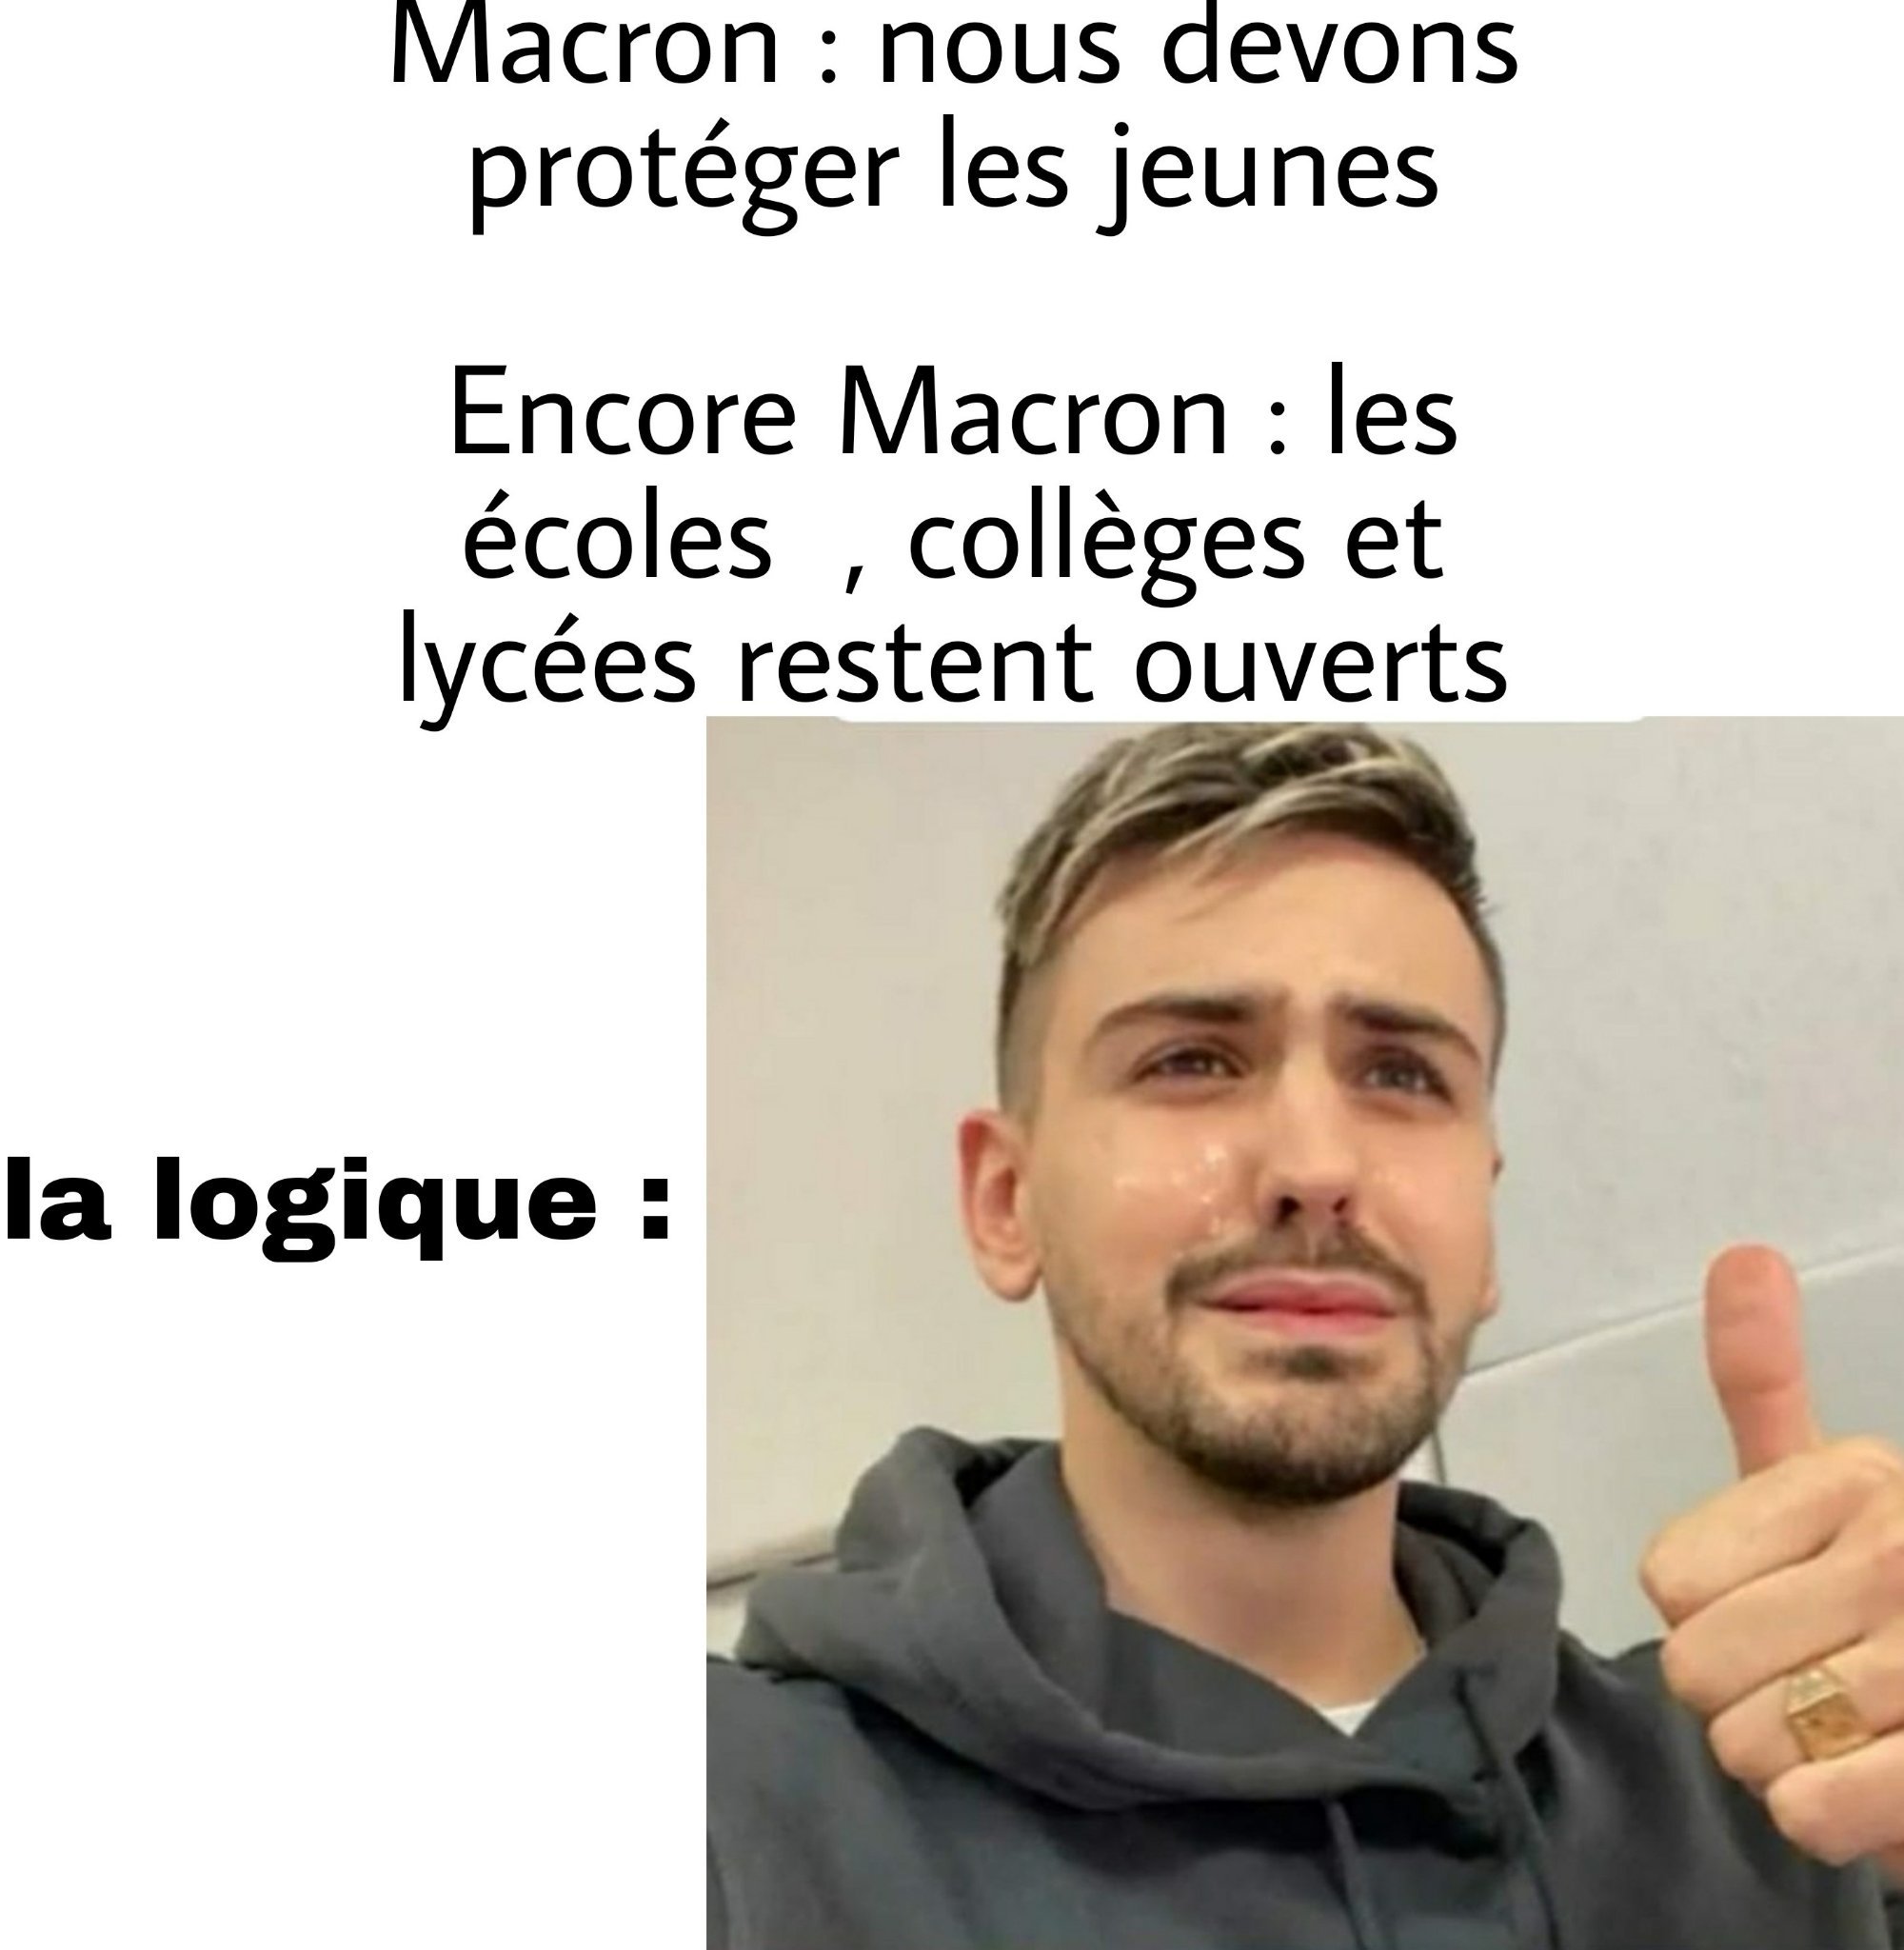 Macron et la logique - meme